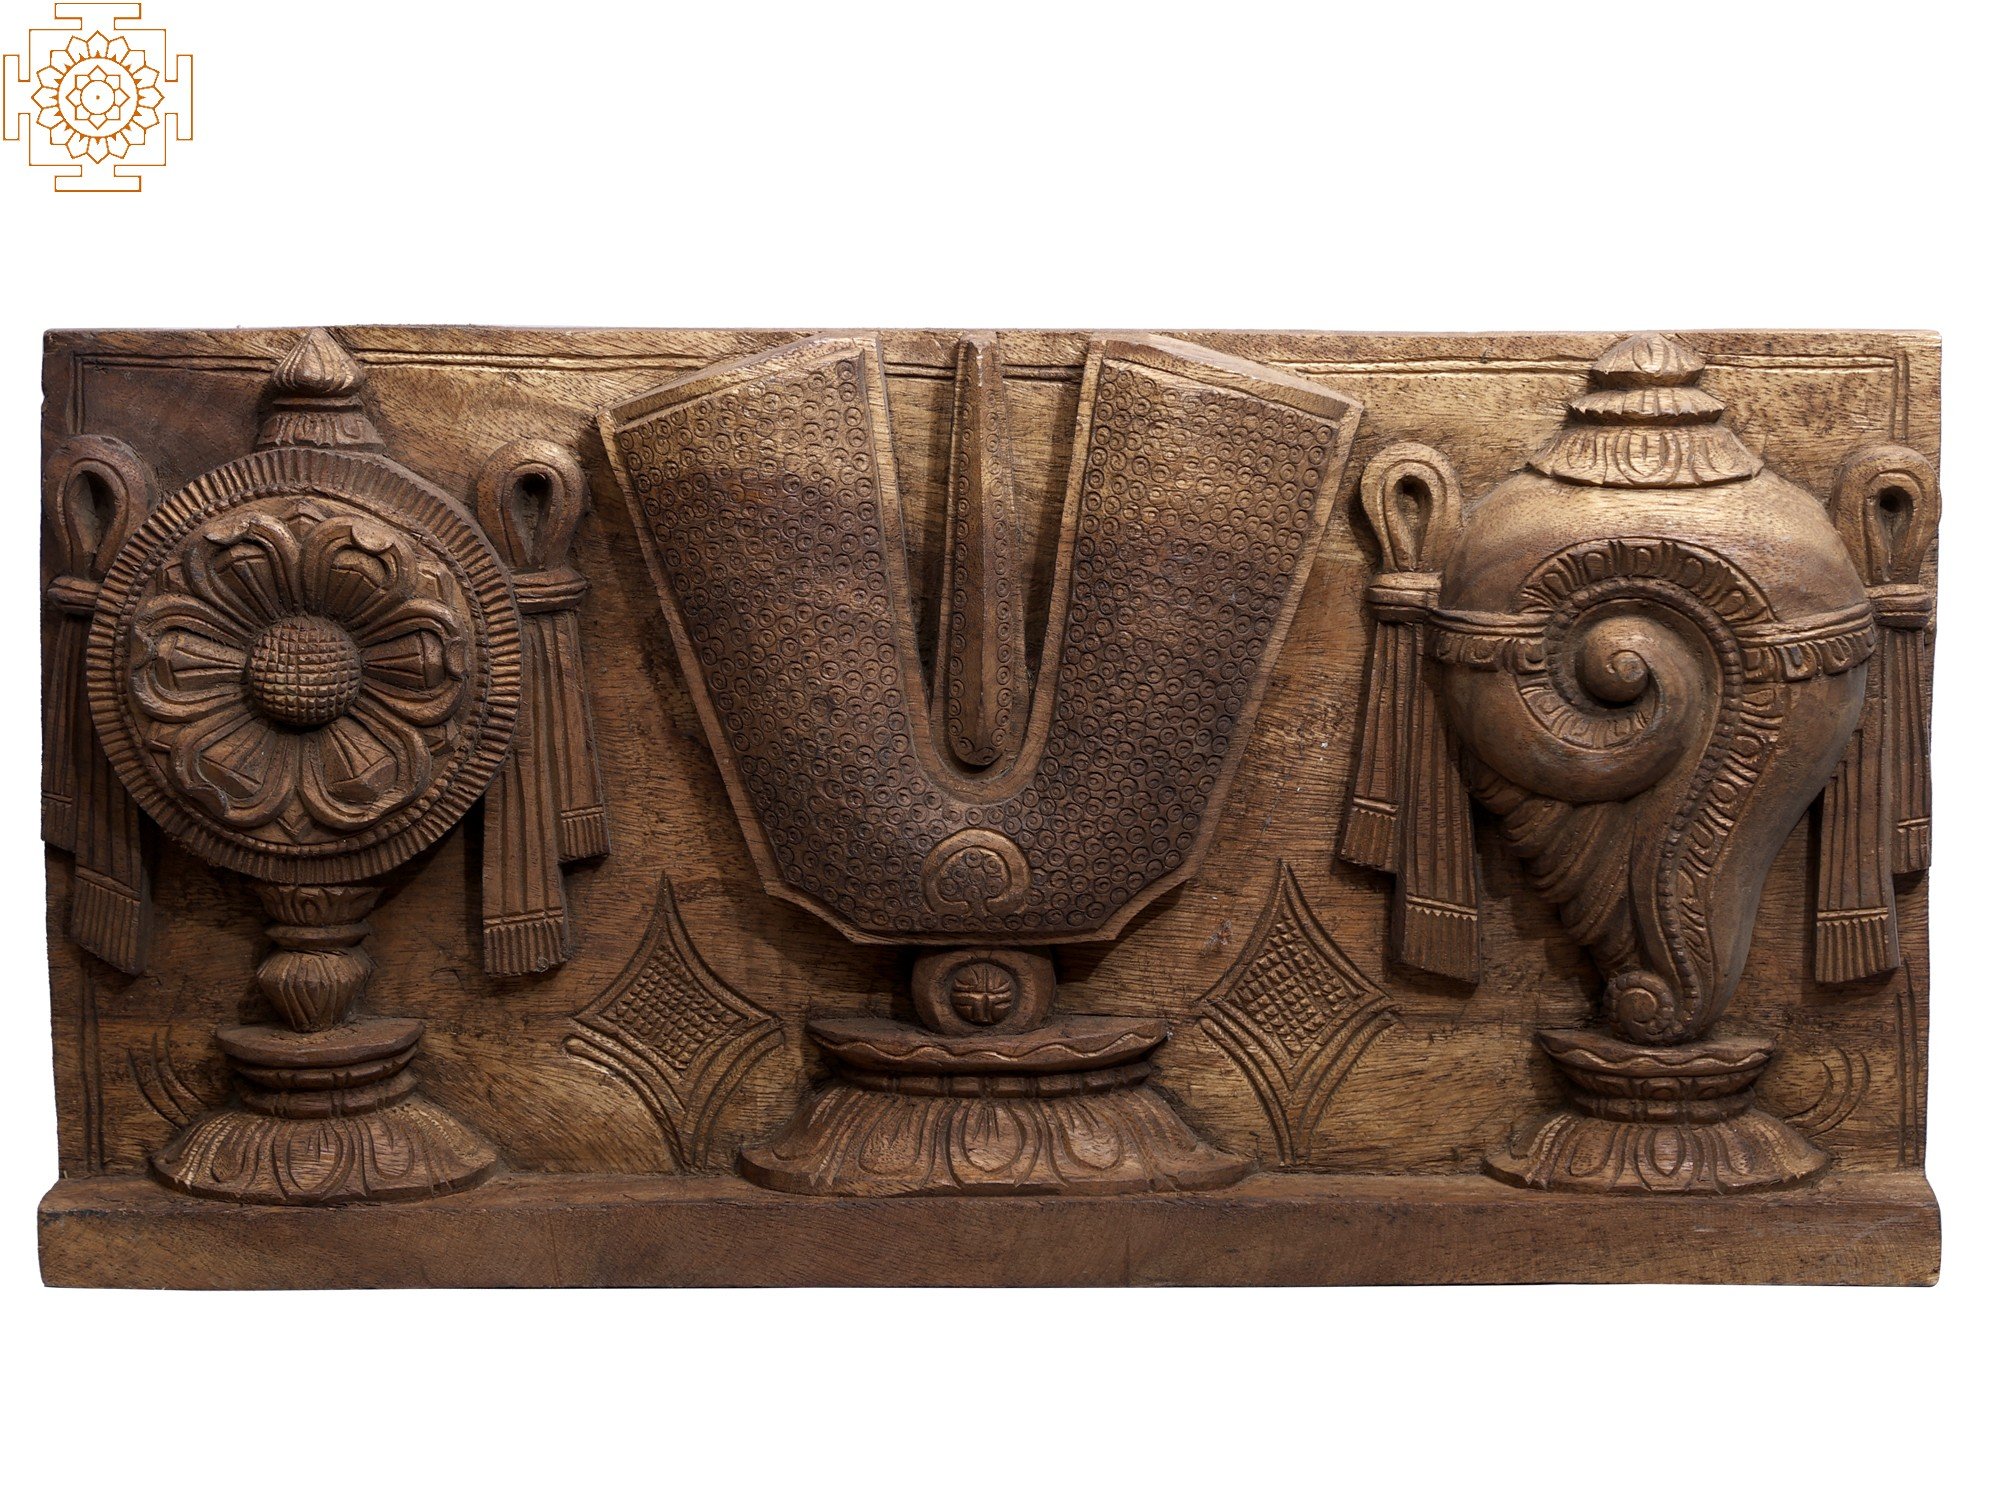 Các biểu tượng của Vaishnava trên tấm ván gỗ khắc sẽ khiến bạn bất ngờ với sơ đồ tinh tế và màu sắc độc đáo. Hãy chiêm ngưỡng công phu của nghệ nhân trong từng chi tiết của tấm ván.